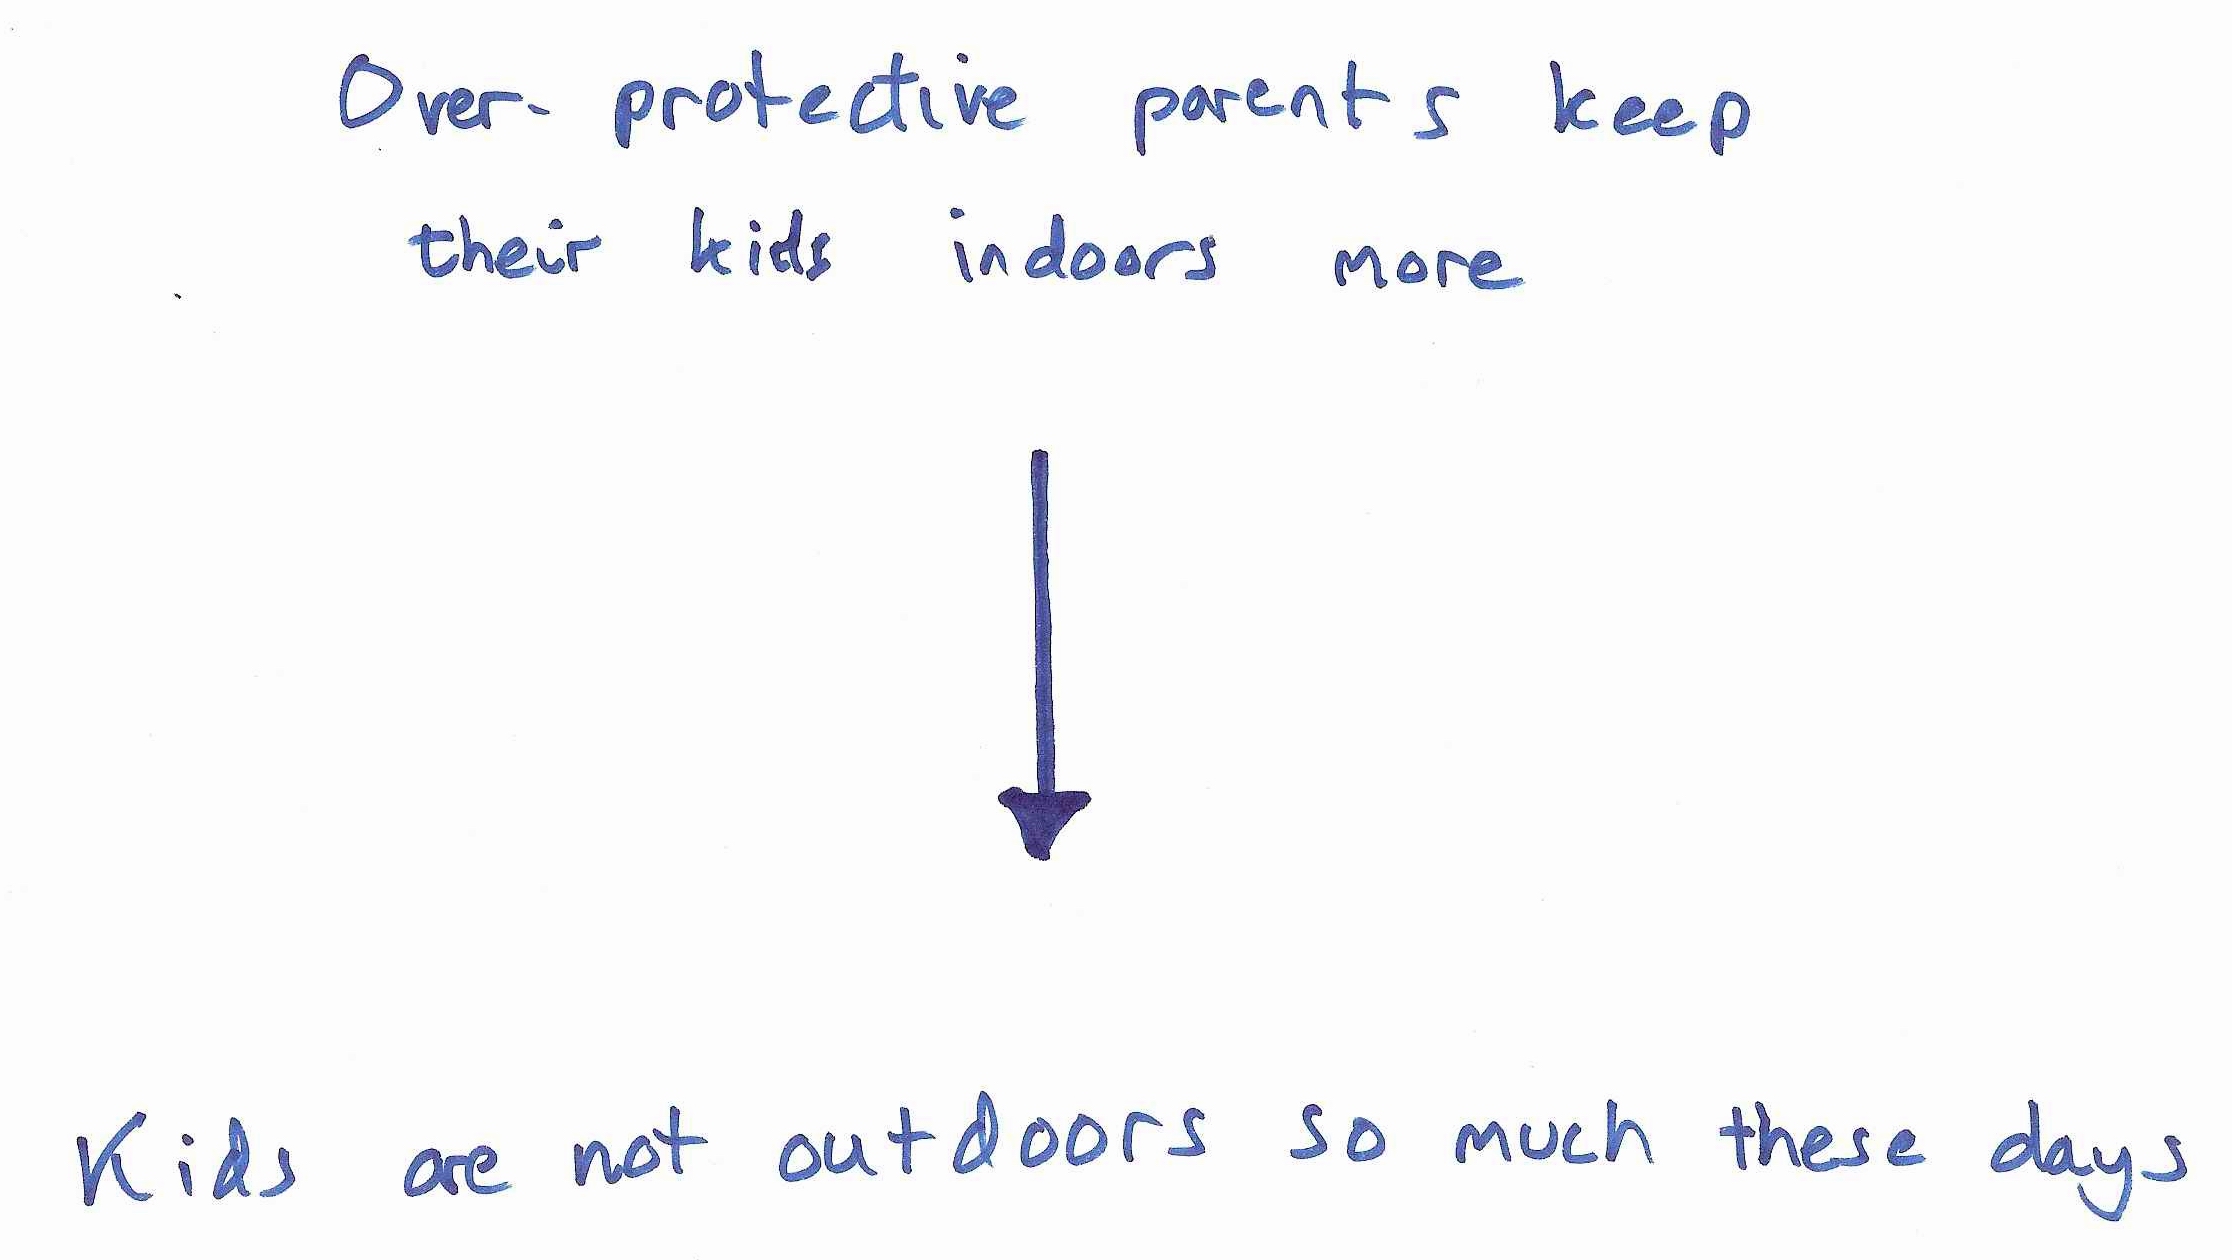 parents too overprotective